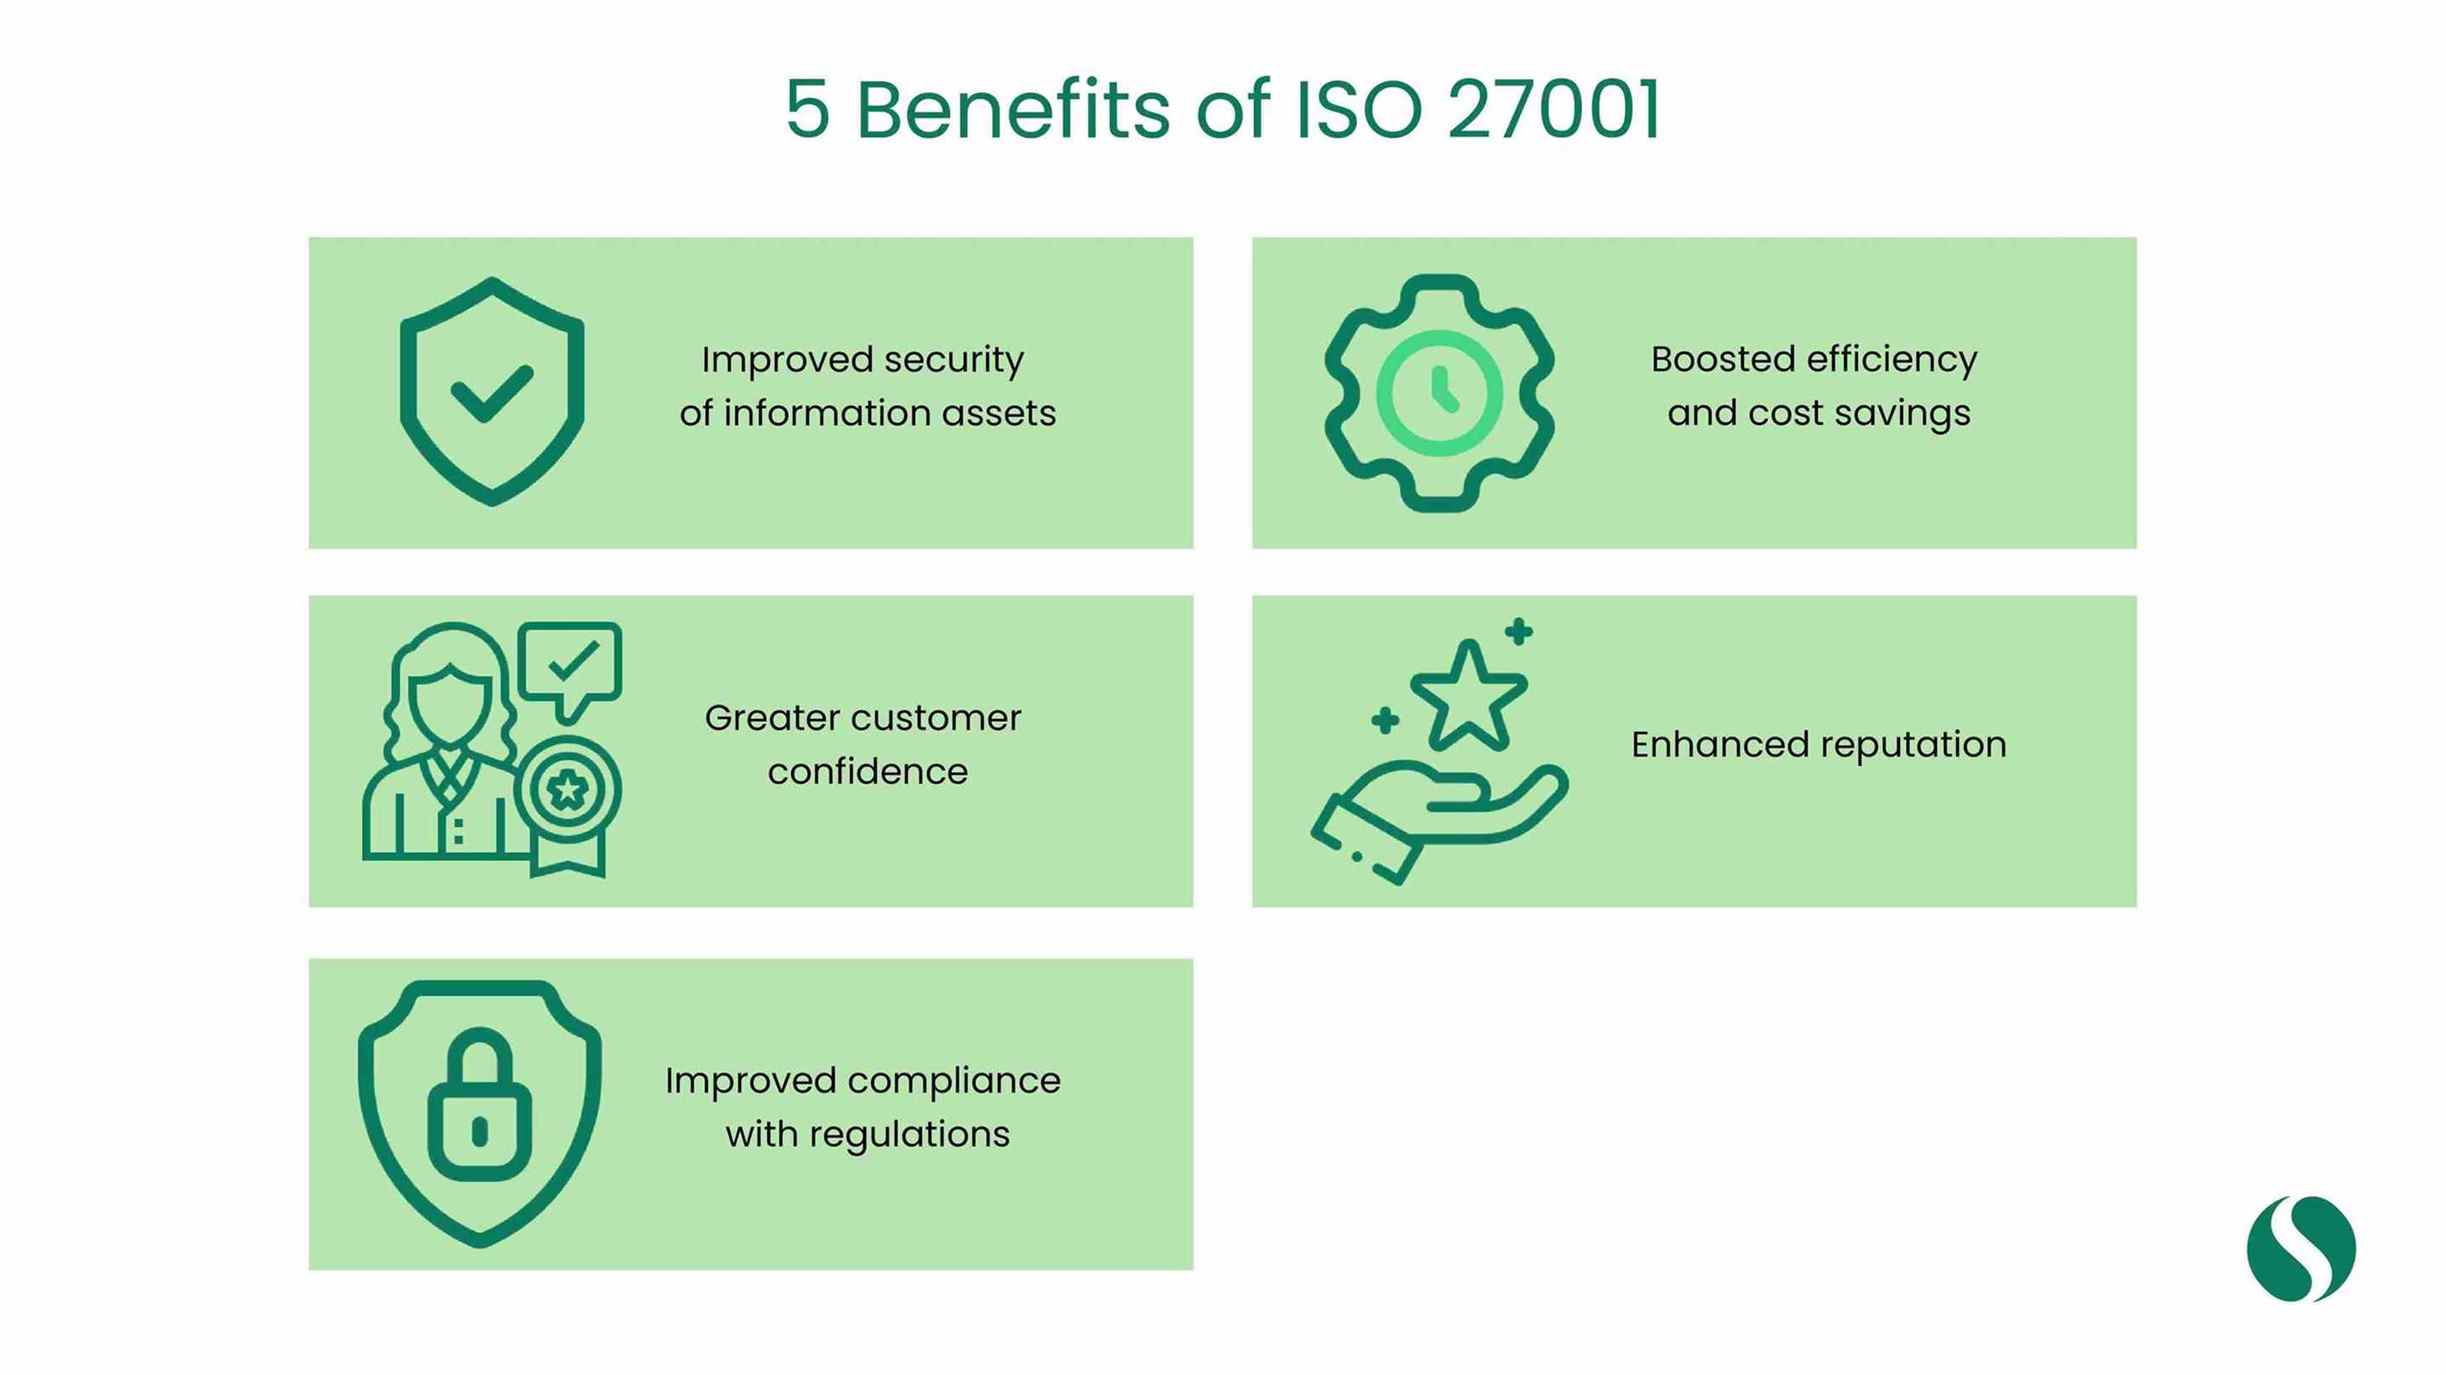 Benefits of iso 27001